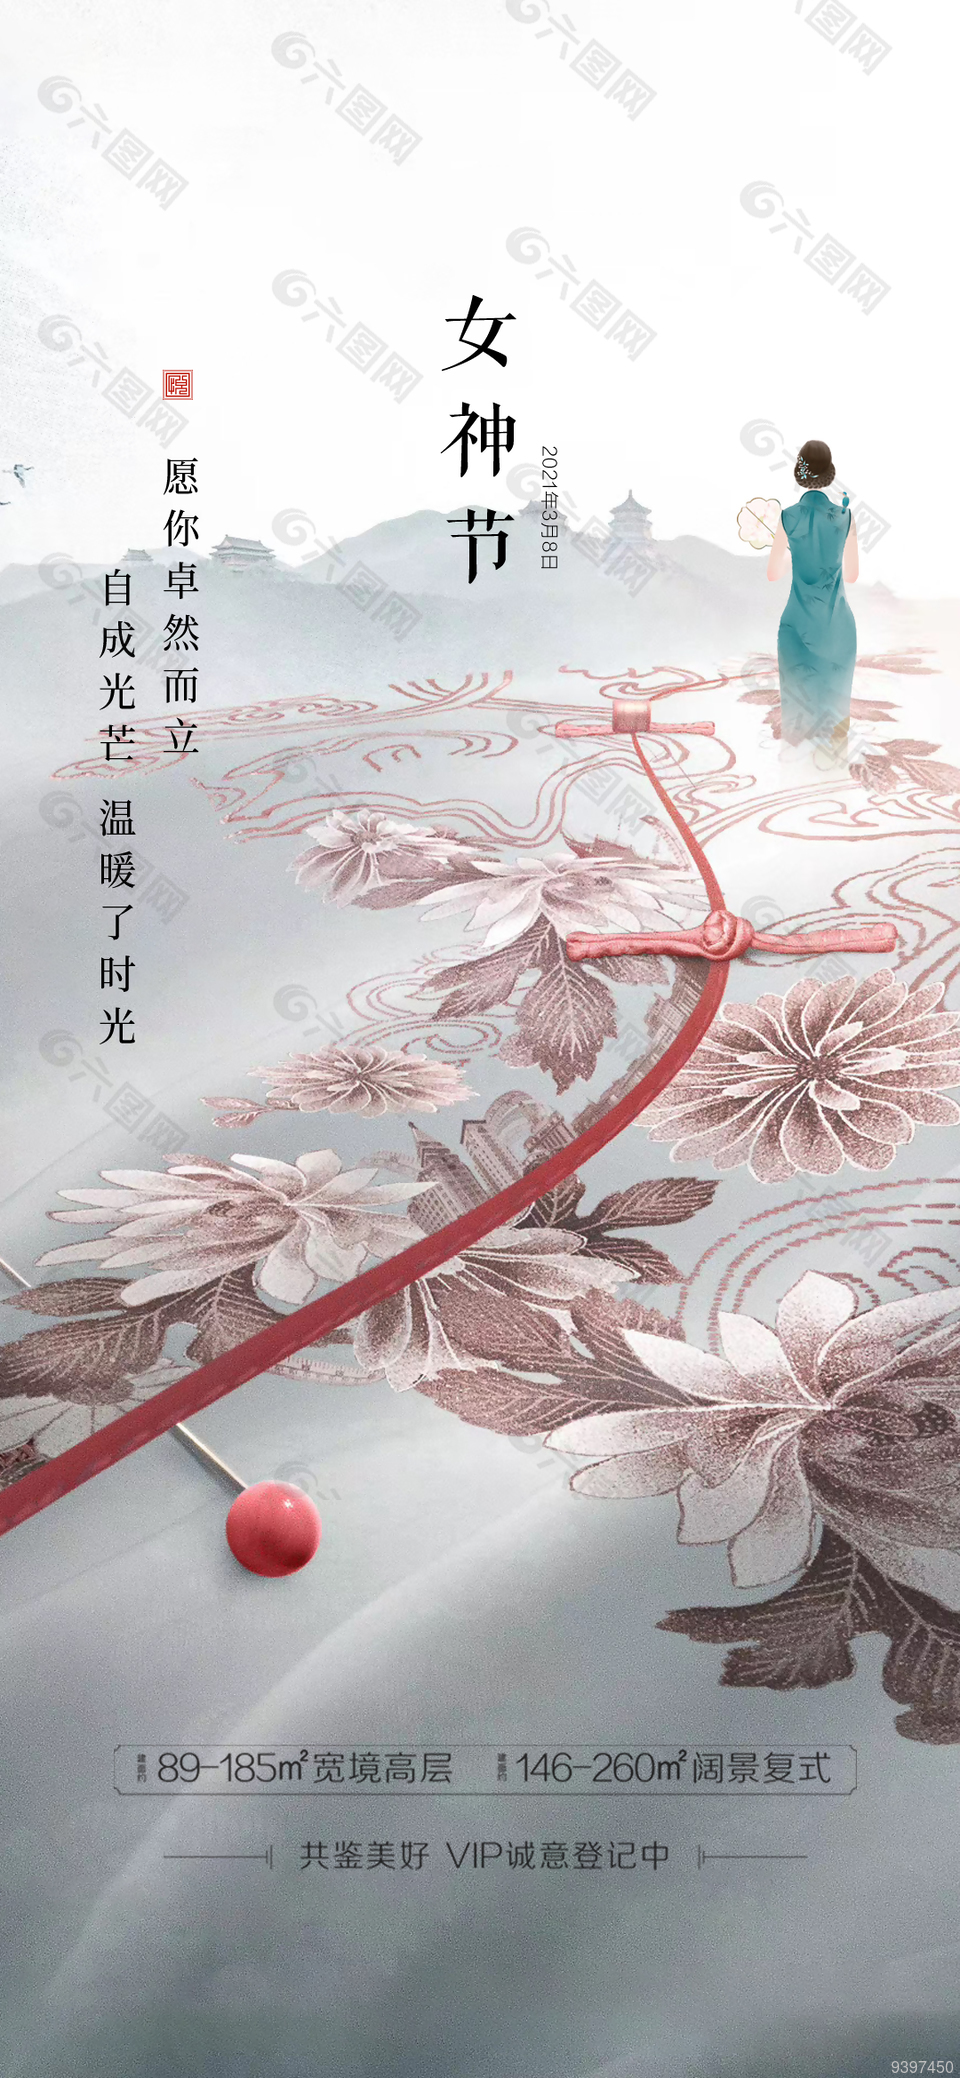 新中式三八女神节创意宣传海报图片大全